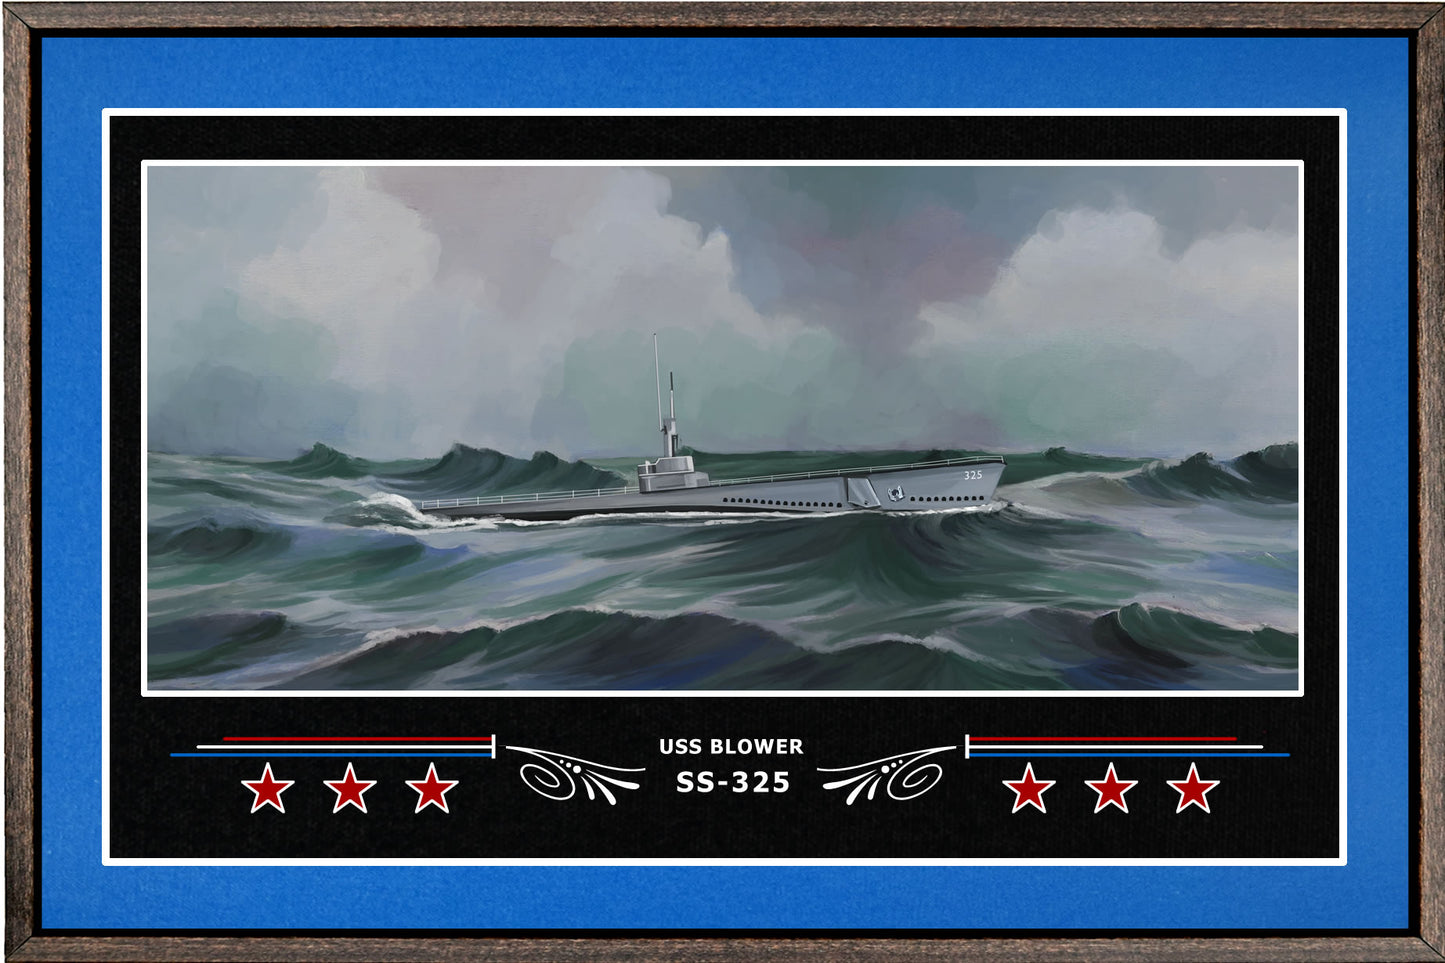 USS BLOWER SS 325 BOX FRAMED CANVAS ART BLUE